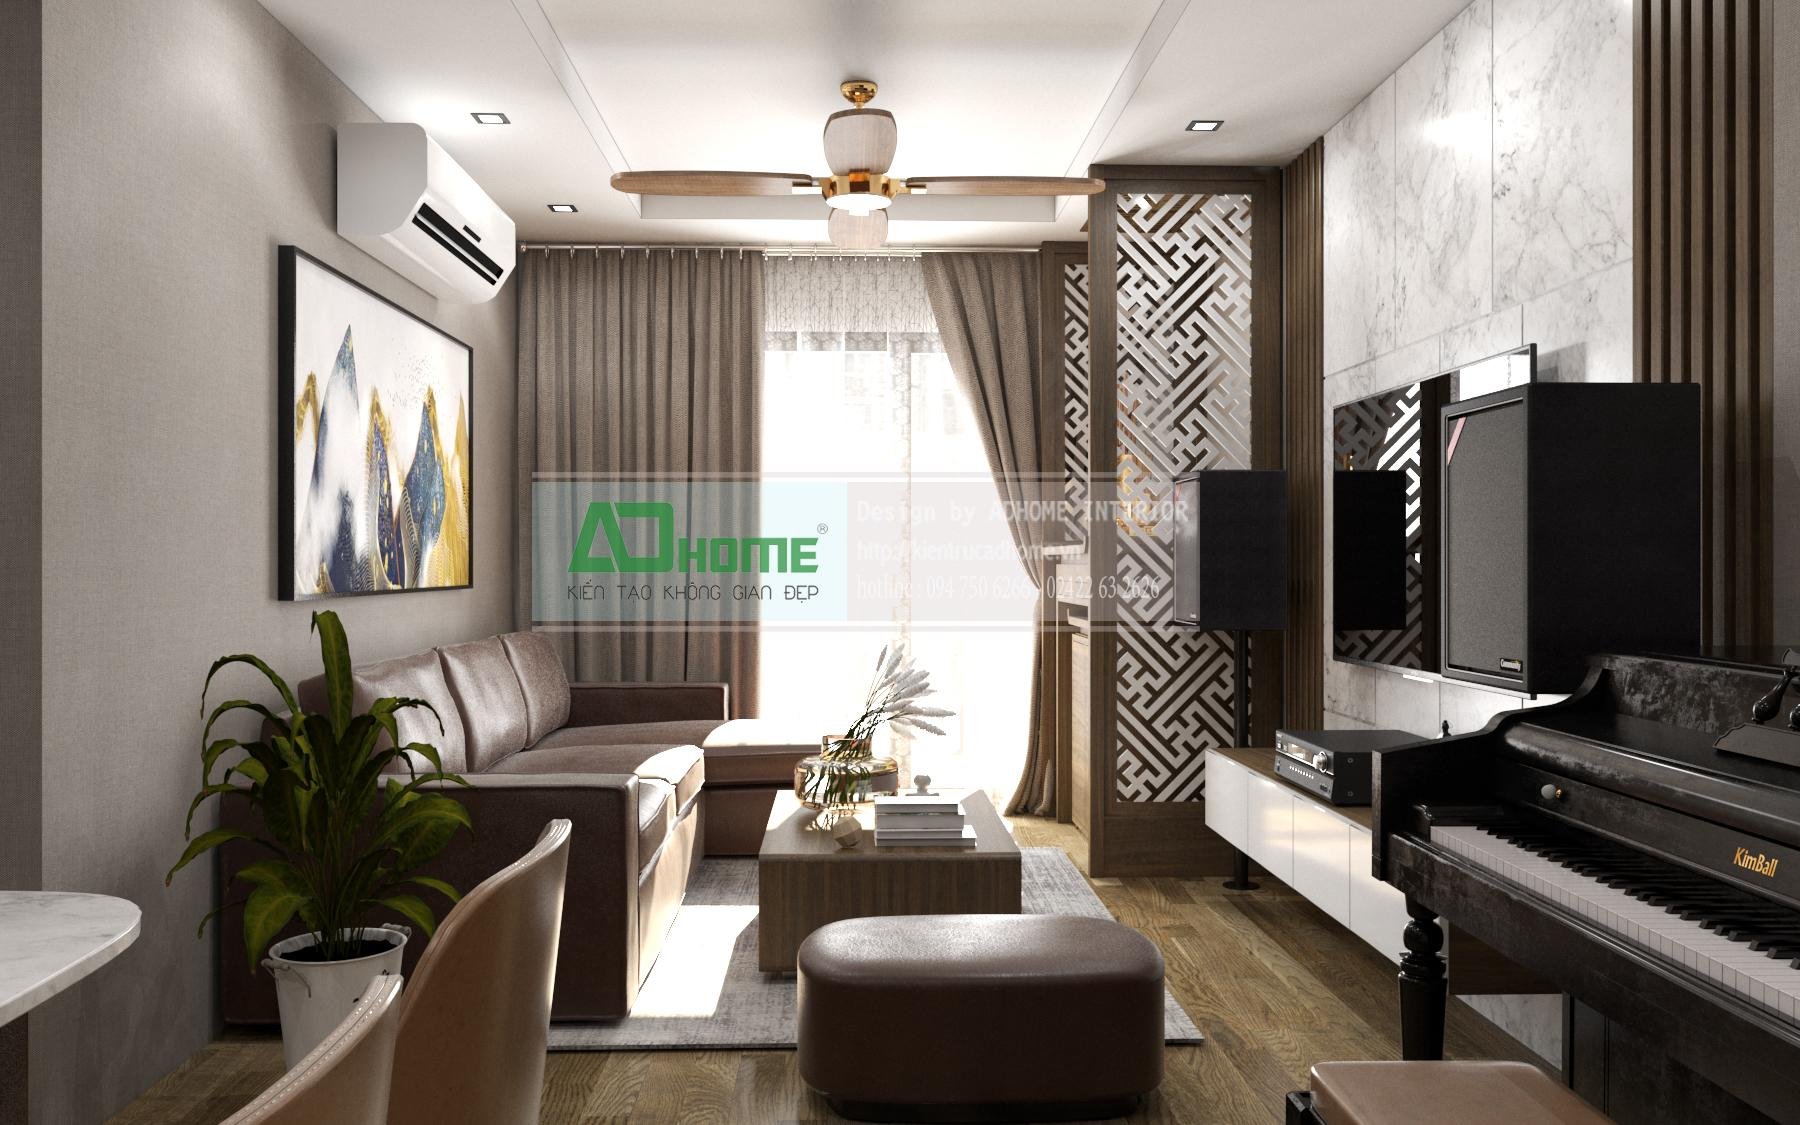  Thiết kế nội thất chung cư Goldmarkcity - 110m2 Sapphire3 - 03 - Phong cách Hiện đại